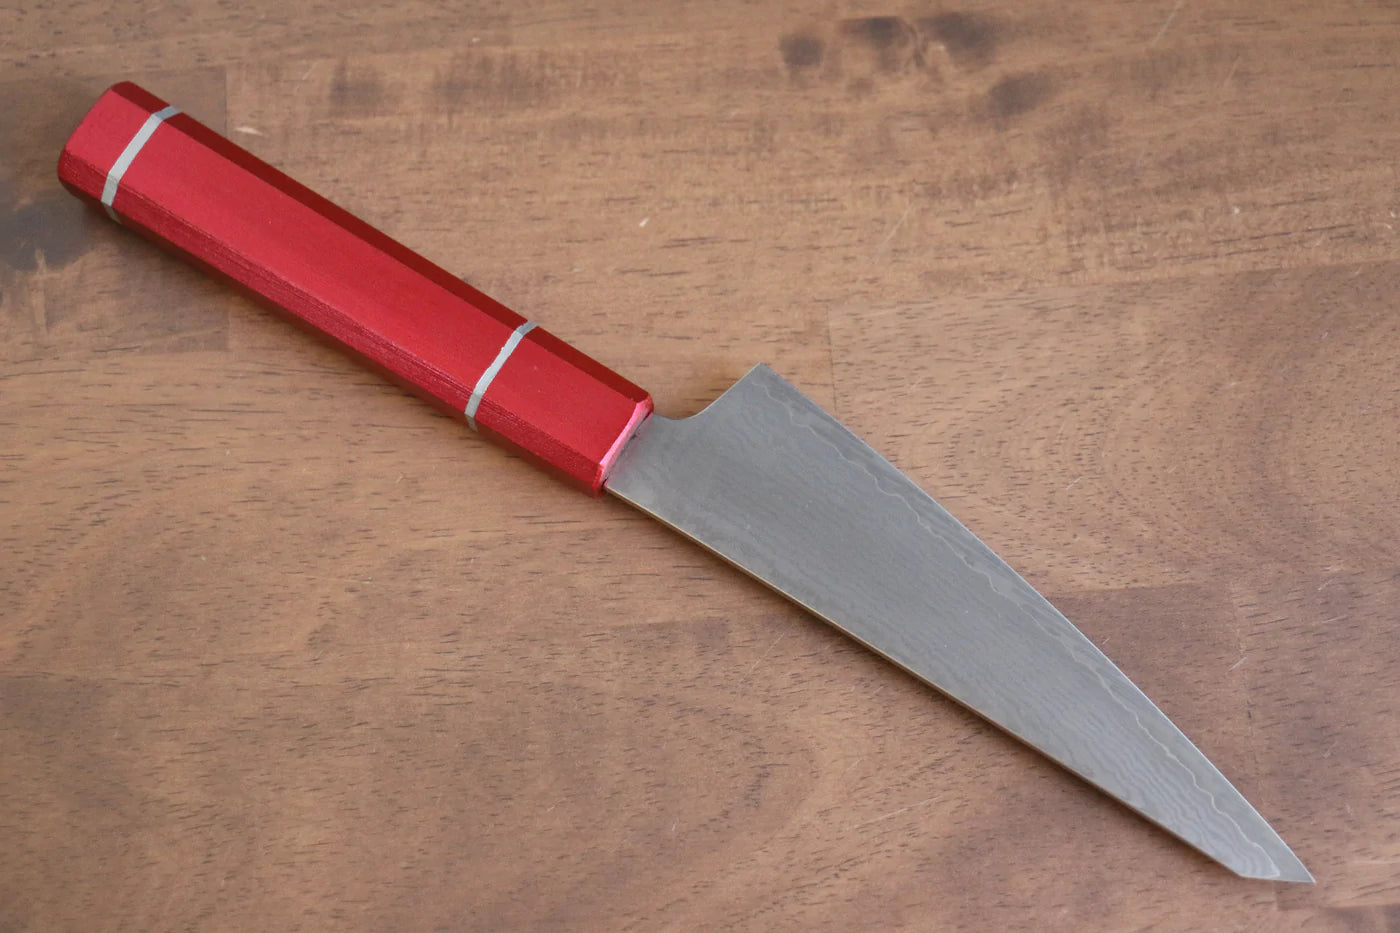 Hochwertiges japanisches Messer – SAKAI TAKAYUKI Sabaki-Ausbeinmesser (Honesuki) Damaststahl VG10 33 Lagen 150 mm